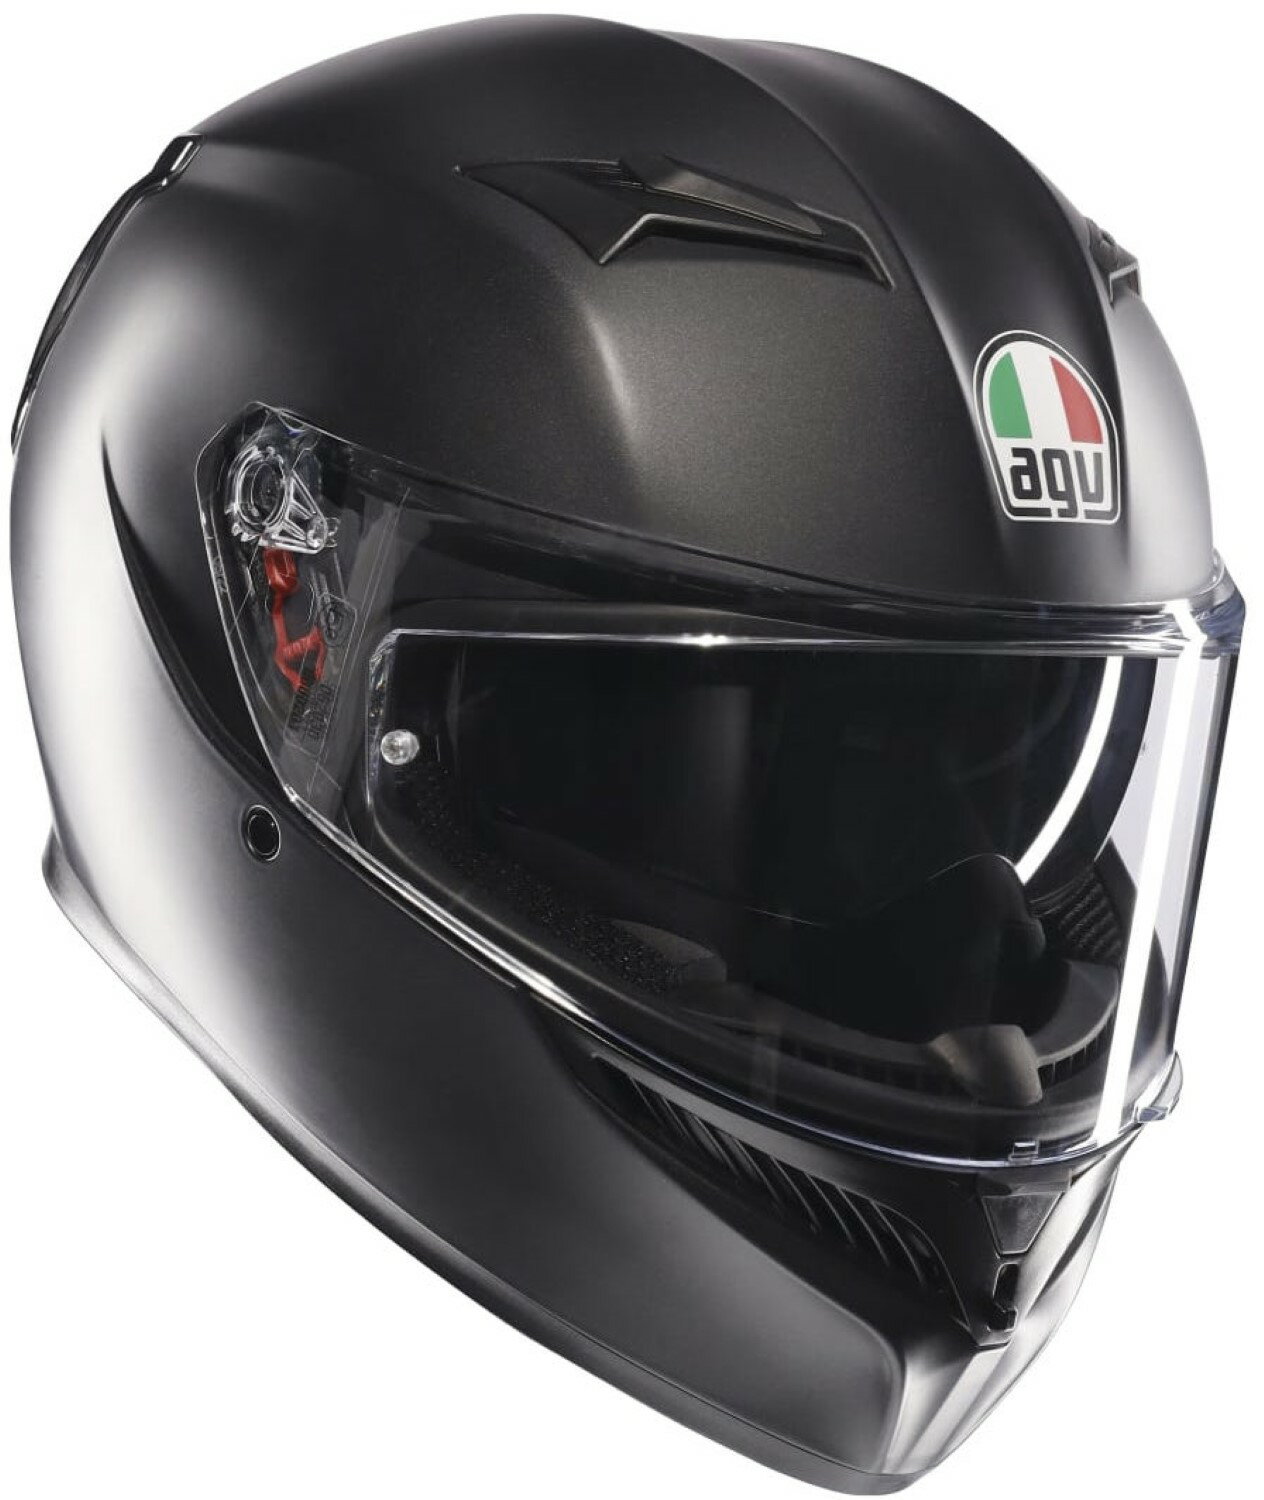  AGV(エージーブイ) バイクヘルメット フルフェイス K3 MATT BLACK (マットブラック) XLサイズ (61-62cm) 18381007004-XL